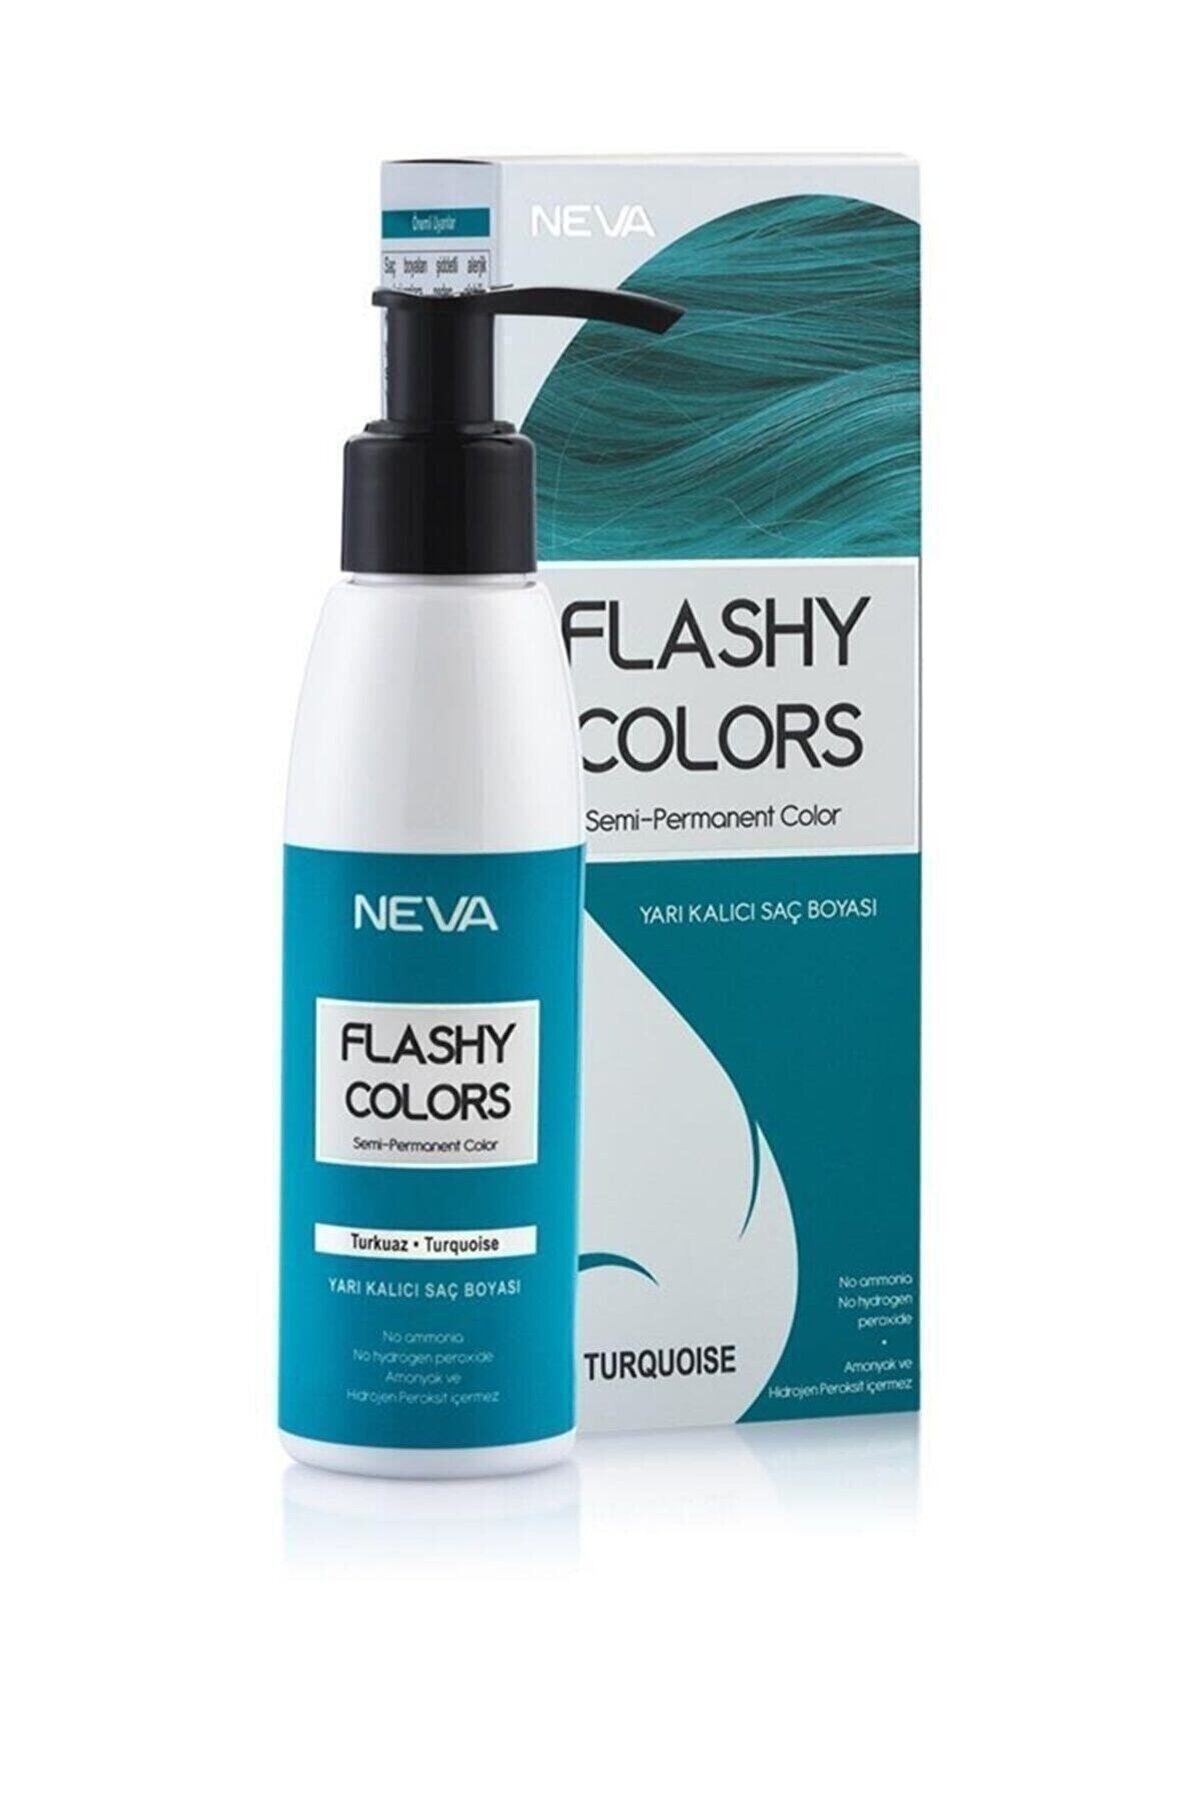 Flashy Colors Yarı Kalıcı Saç Boyası - Turquoise / Turkuaz 100 ml